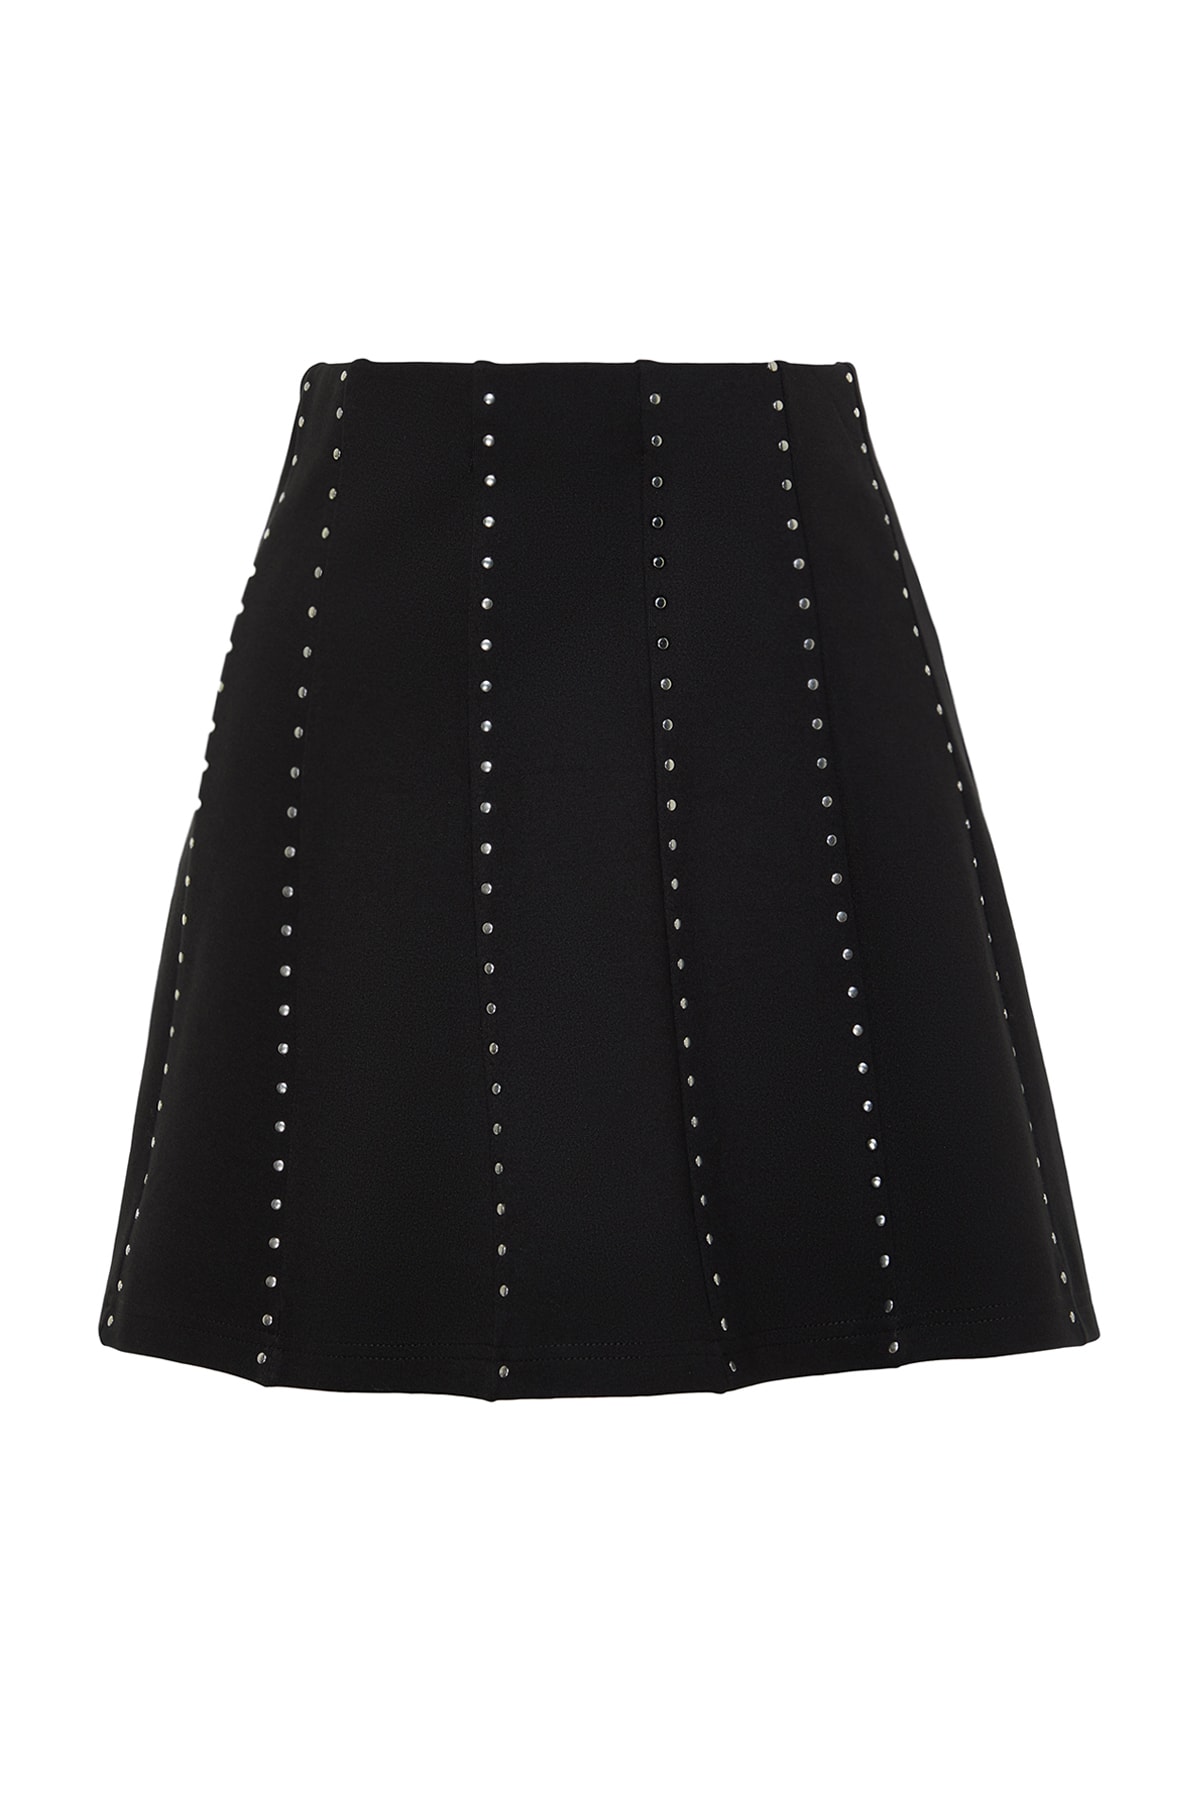 Levně Trendyol Black Stone Accessory Mini Skater/Knitted Waistcoat Knitted Skirt